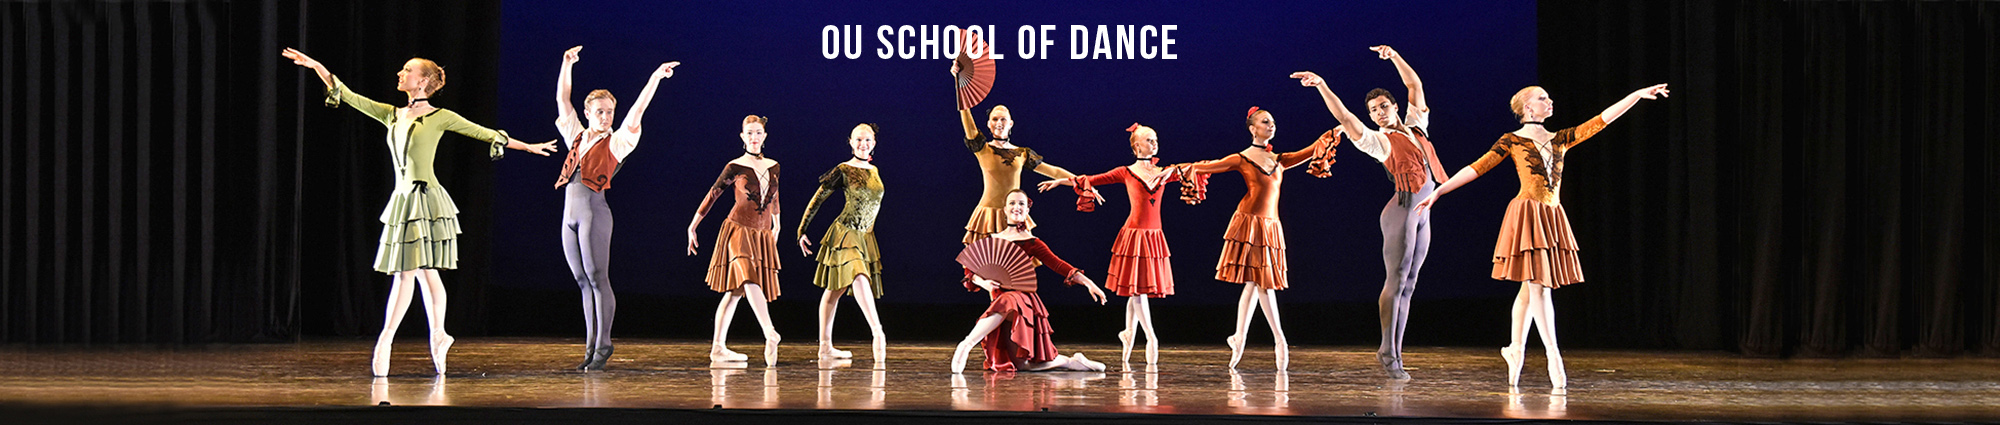 OU School of Dance